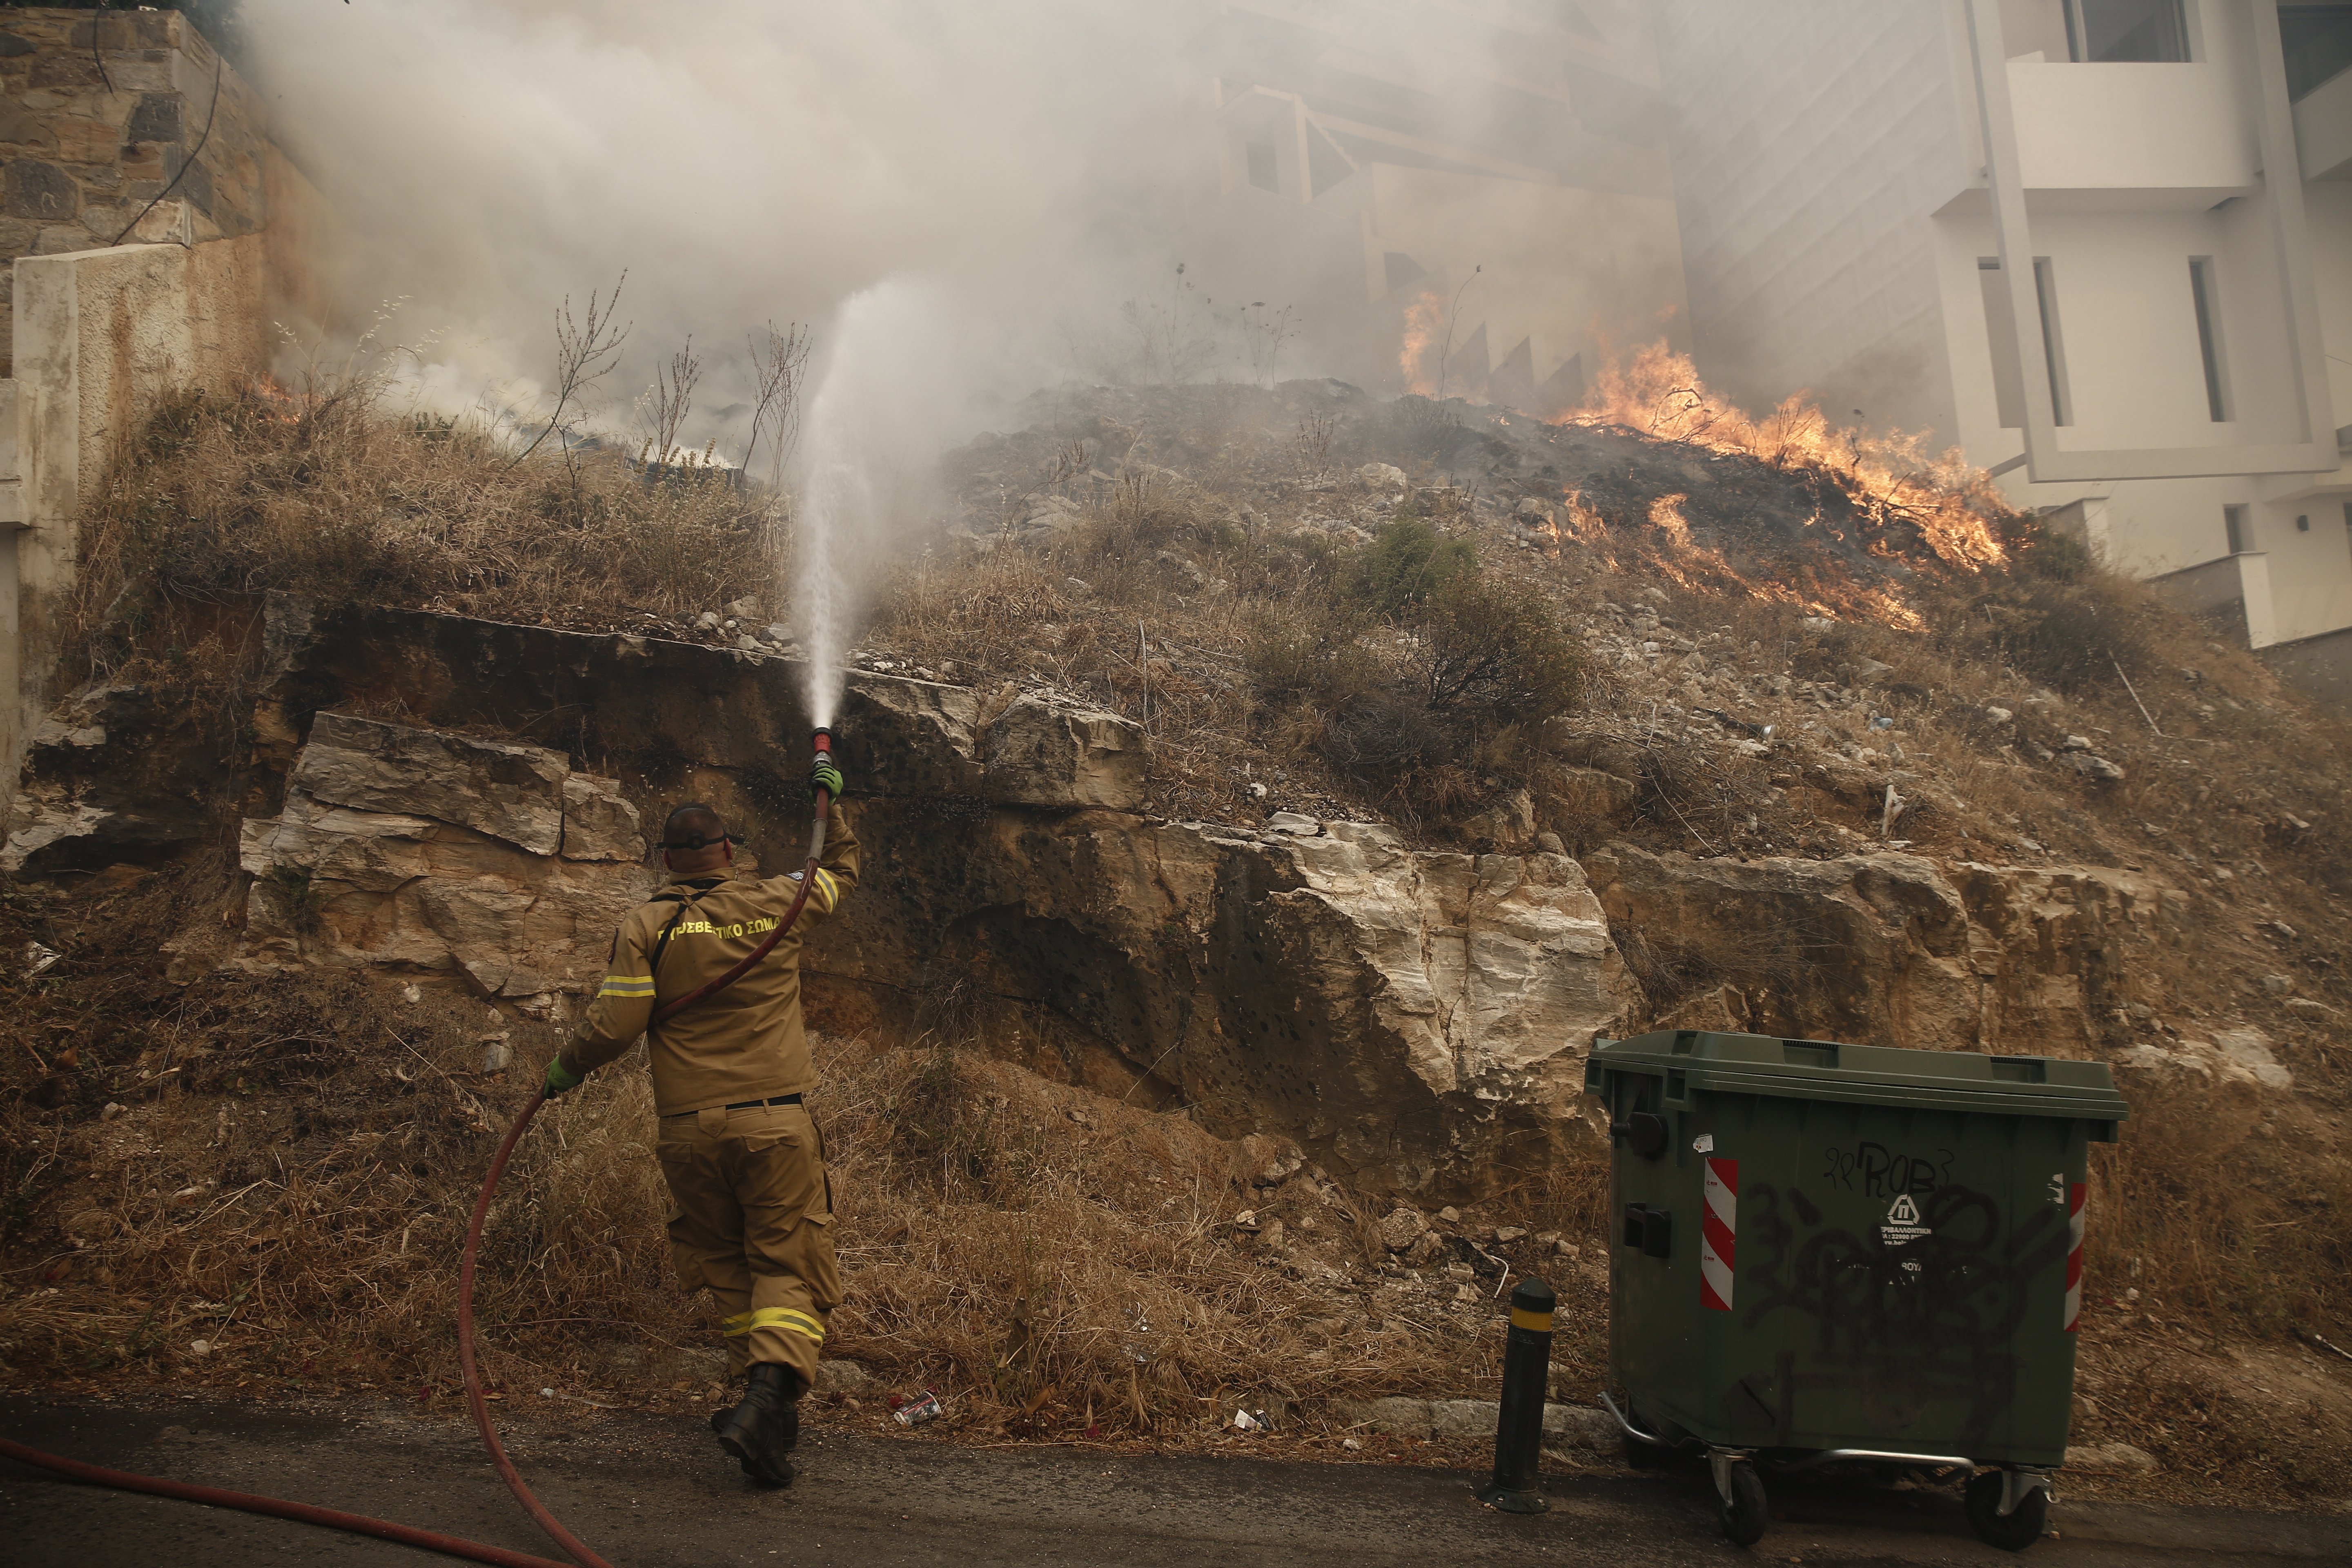 Πυροσβέστης επιχειρεί στην κατάσβεση φωτιάς που καίει μέσα σε κατοικημένη περιοχή στην Άνω Βούλα, Σάββατο 4 Ιουνίου 2022. Προς τη Βούλα έχει κινηθεί η φωτιά, που ξέσπασε νωρίτερα σε περιοχή της Άνω Γλυφάδας. Κι εκεί πλέον αρχίζει να απειλείται κατοικημένη περιοχή. Μάλιστα ο δήμαρχος Βάρης-Βούλας-Βουλιαγμένης Γρηγόρης Κωνσταντέλλος ζήτησε να γίνει εκκένωση της περιοχής Πανόραμα, από την οδό Υμηττού και προς τον ορεινό όγκο και οι κάτοικοι να συνεργαστούν με τις Αρχές. ΑΠΕ-ΜΠΕ/ΑΠΕ-ΜΠΕ/ΓΙΑΝΝΗΣ ΚΟΛΕΣΙΔΗΣ